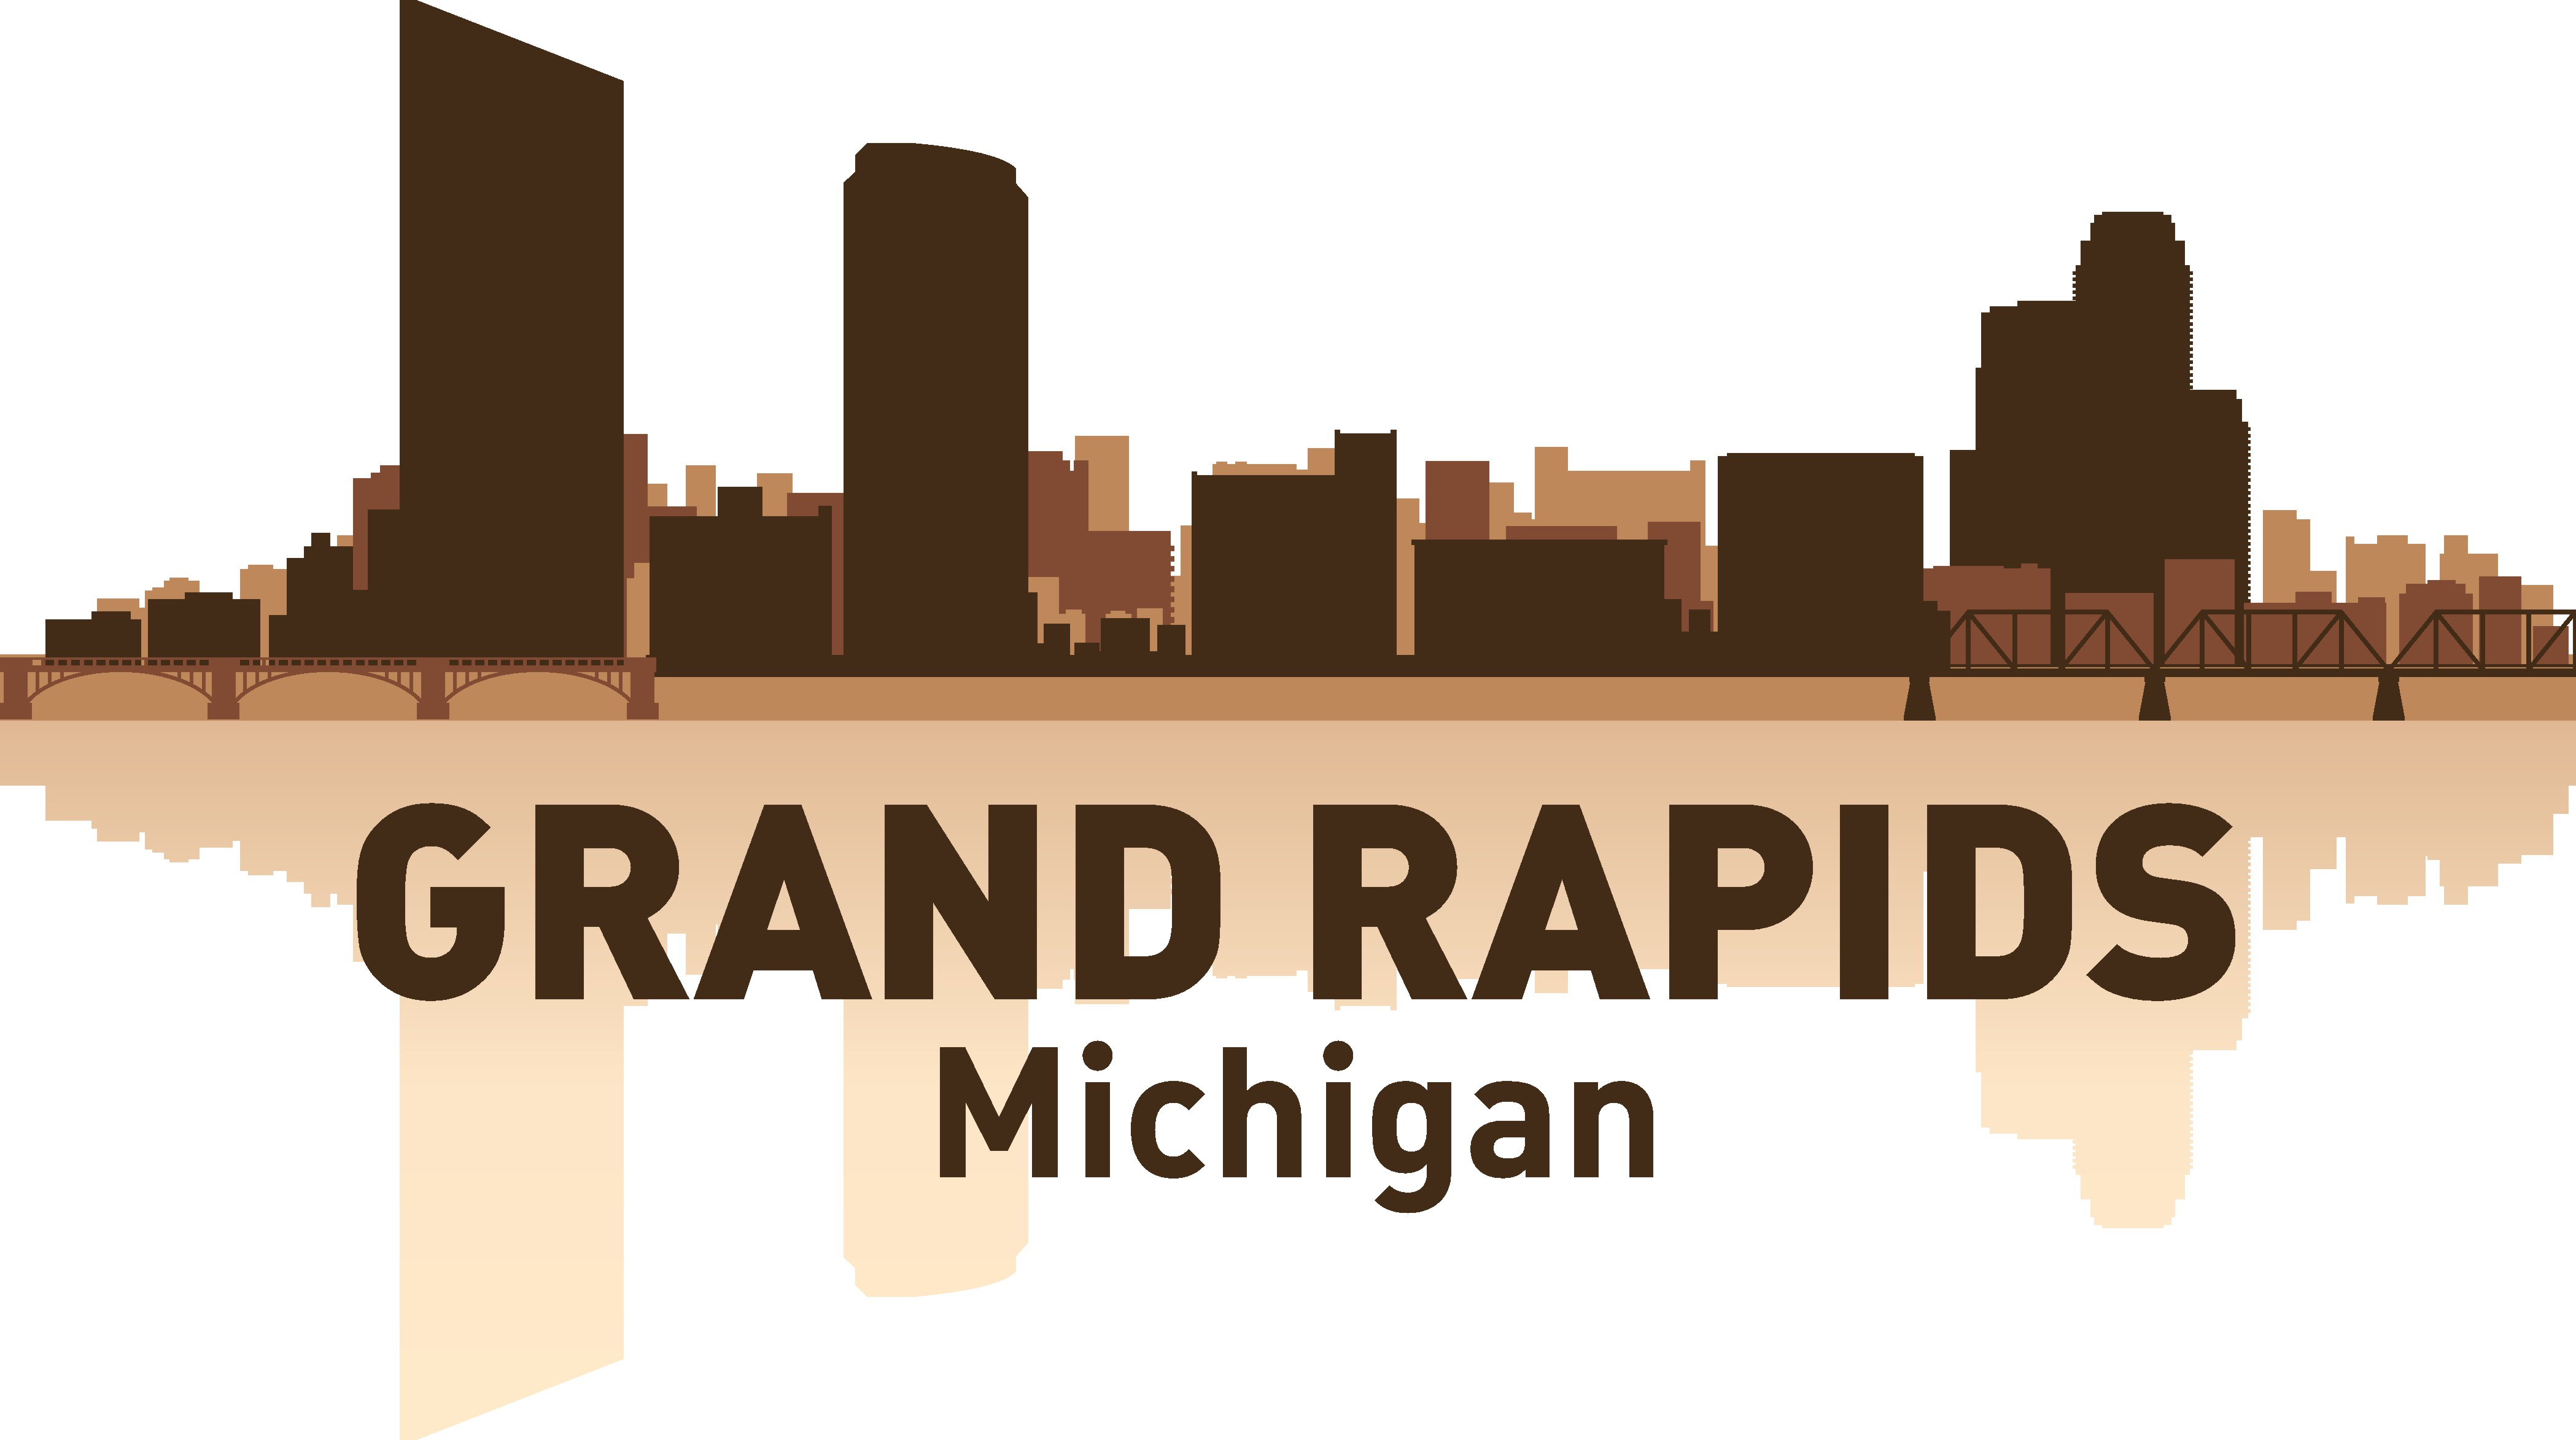 Grand Rapids Manzarası